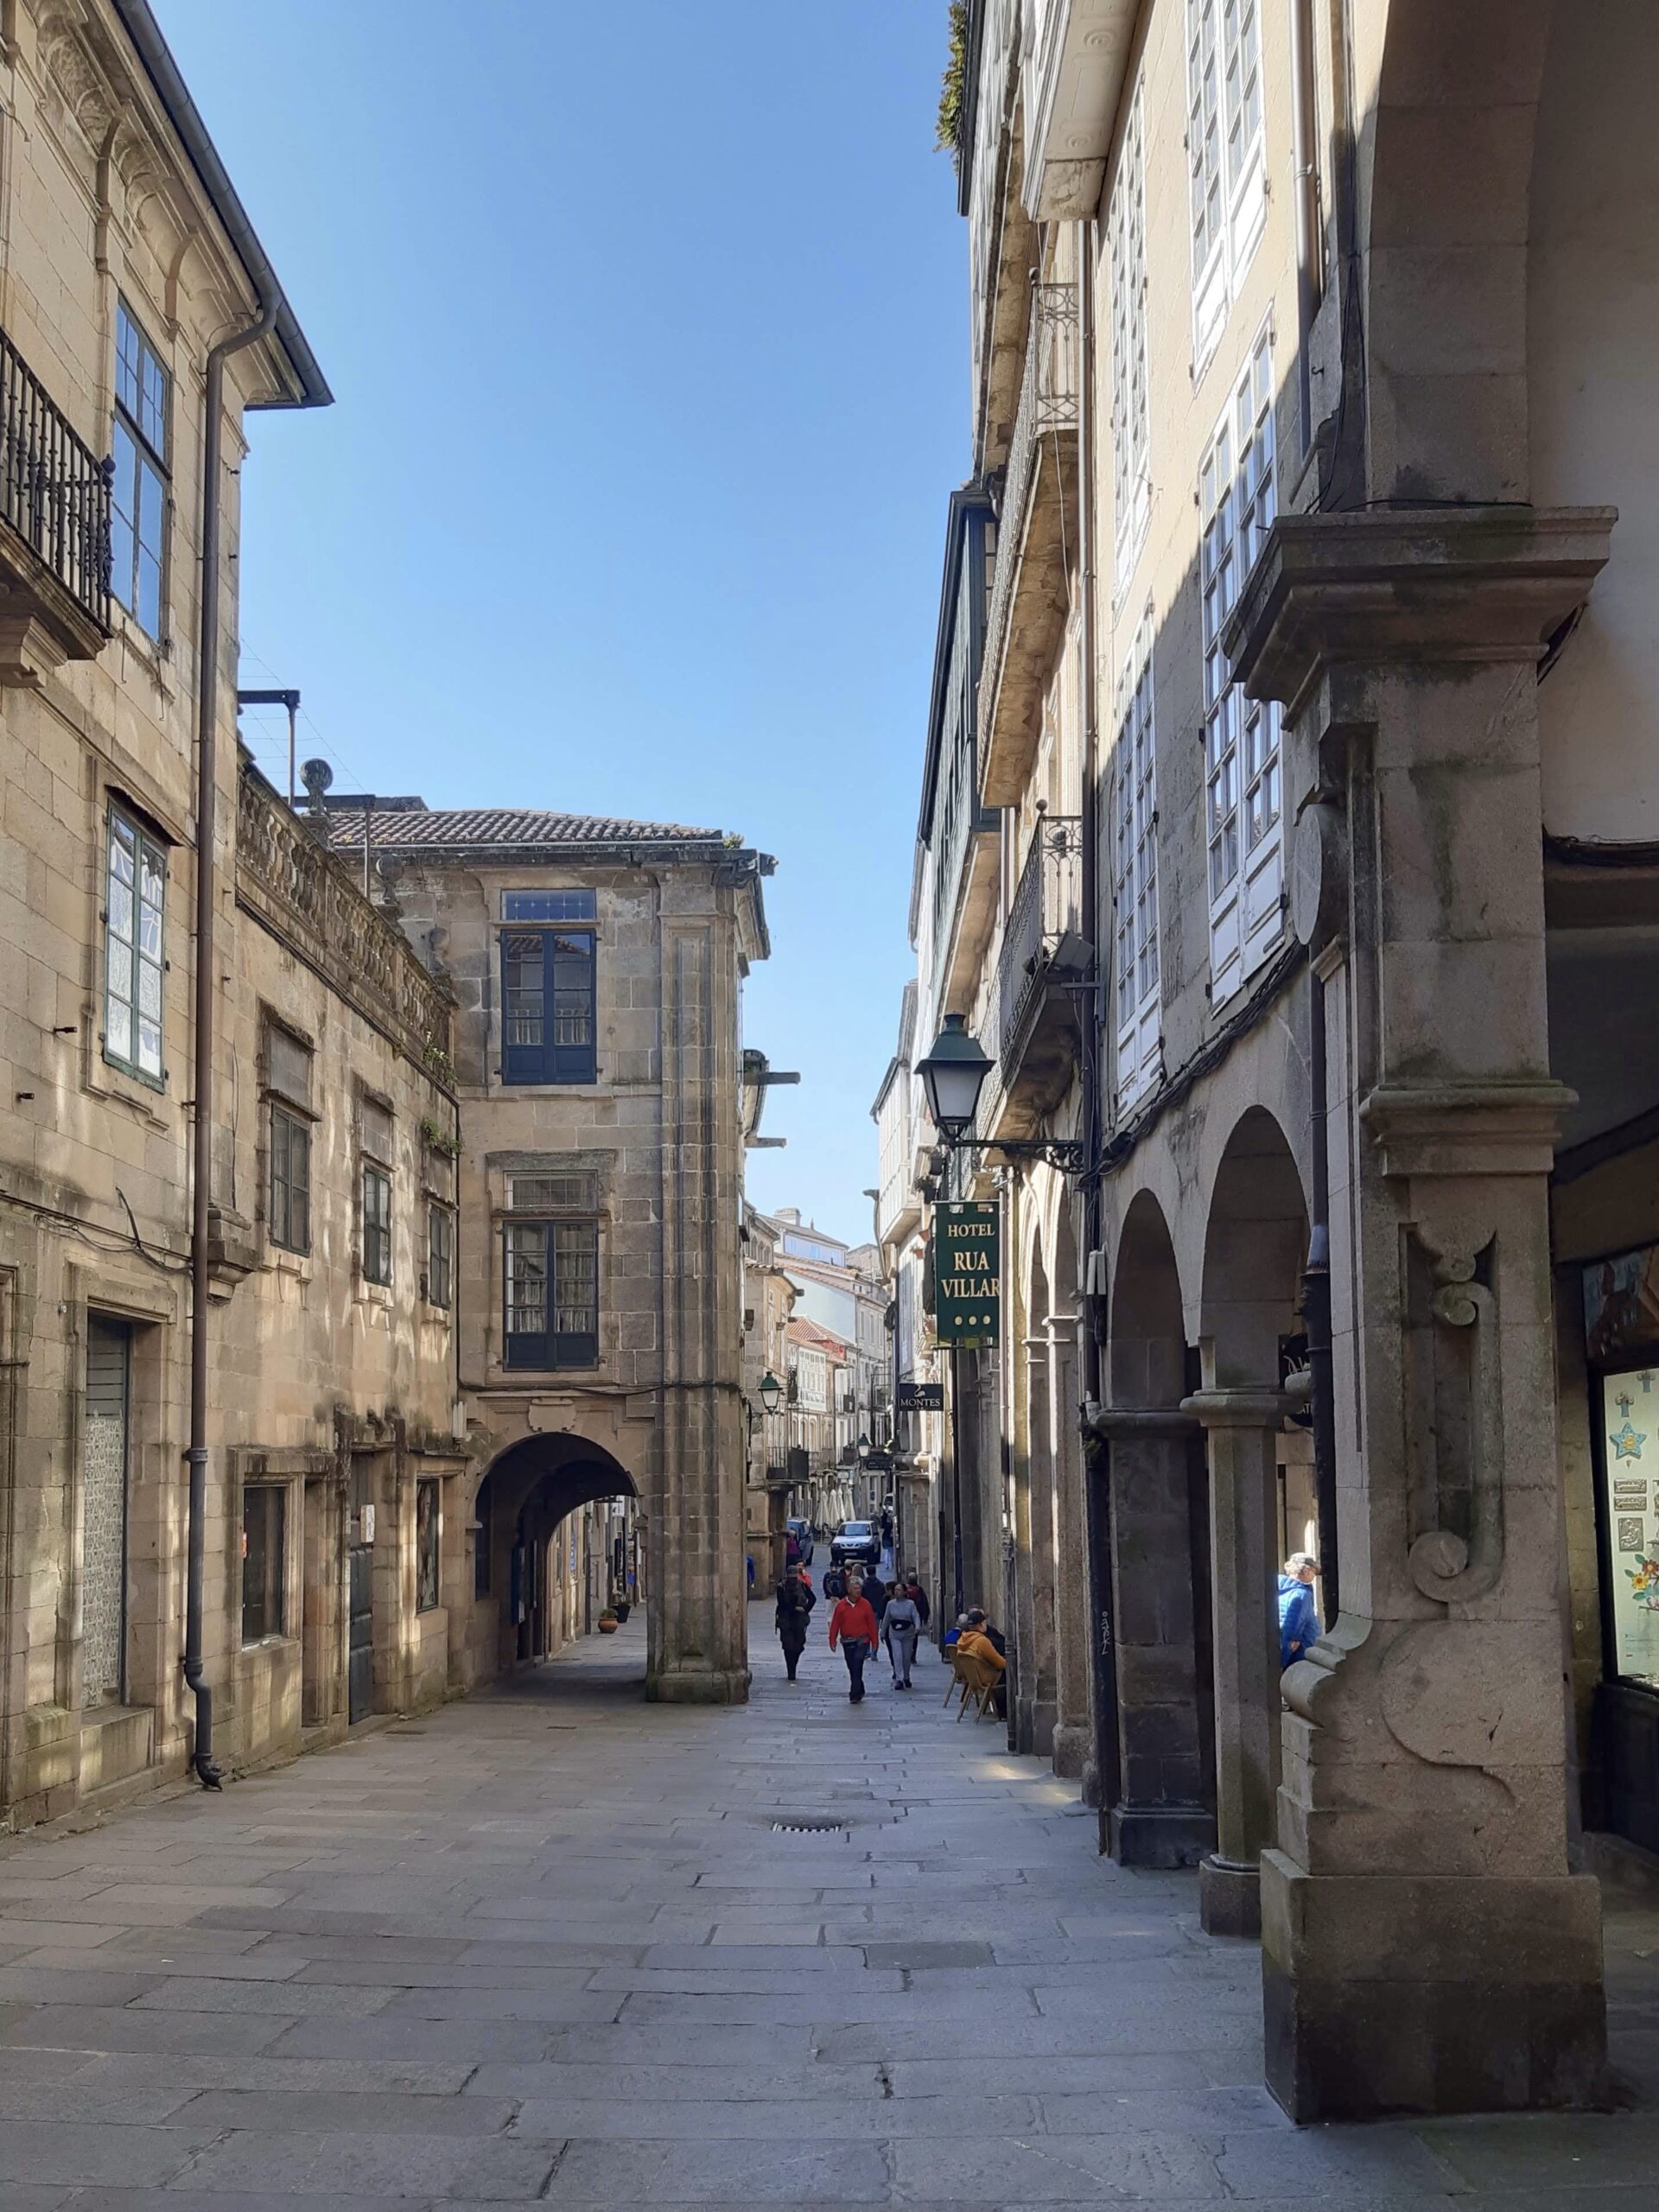 Street scene of Santiago de Compostela old town